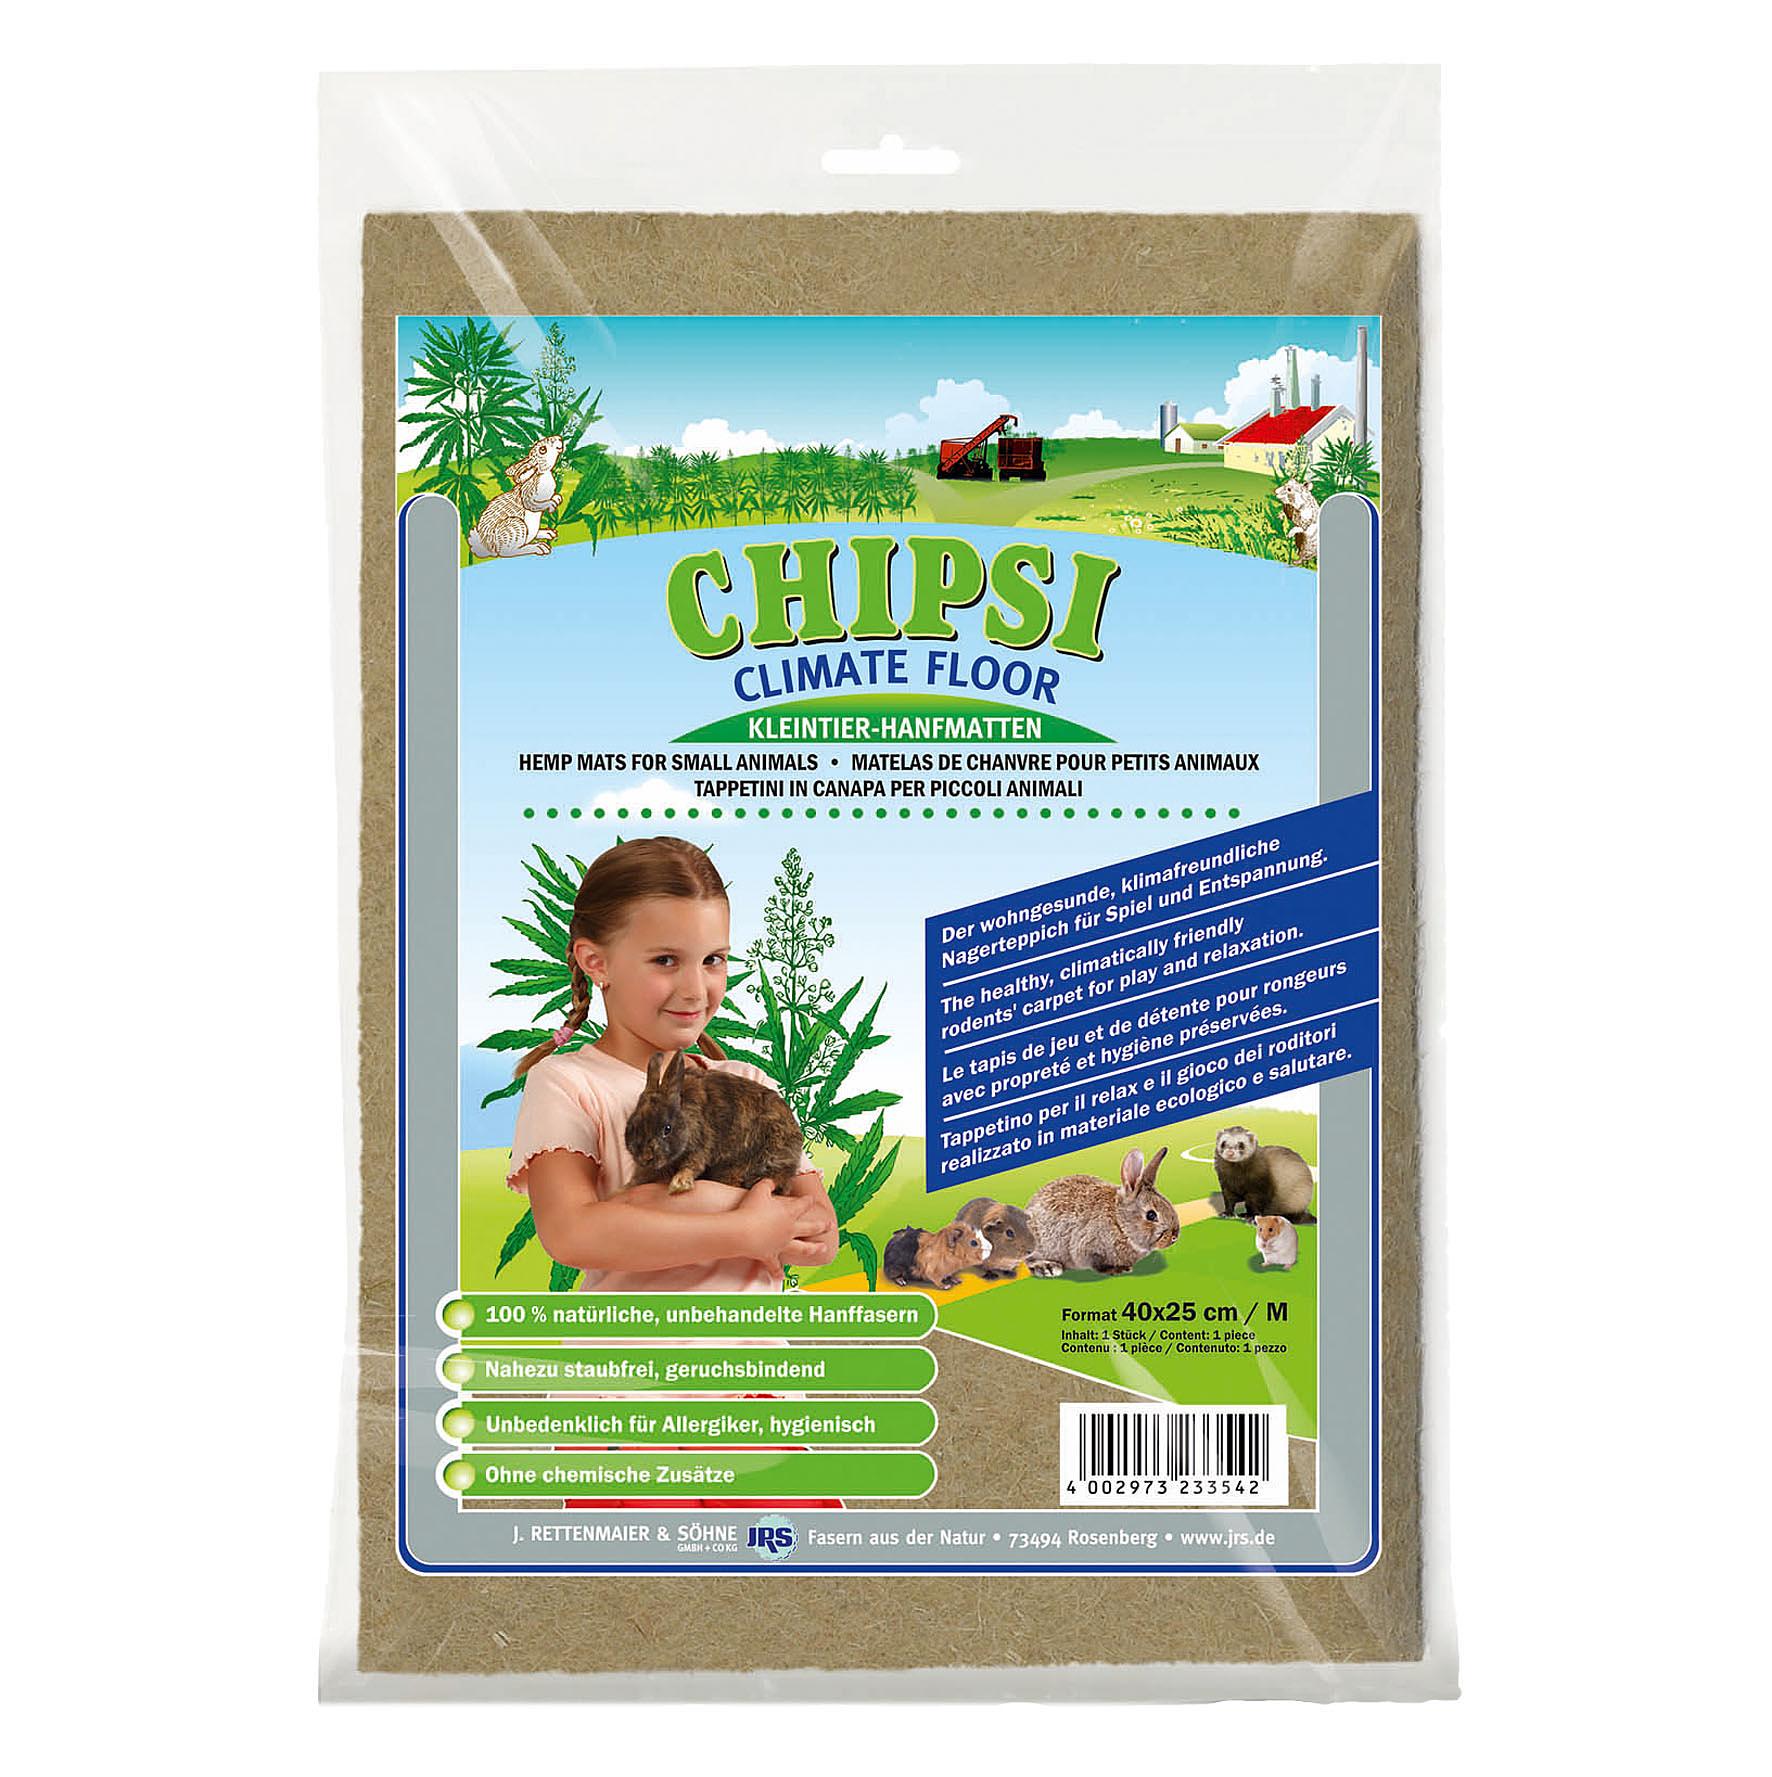 Chipsi Climate Floor – matelas de chanvre